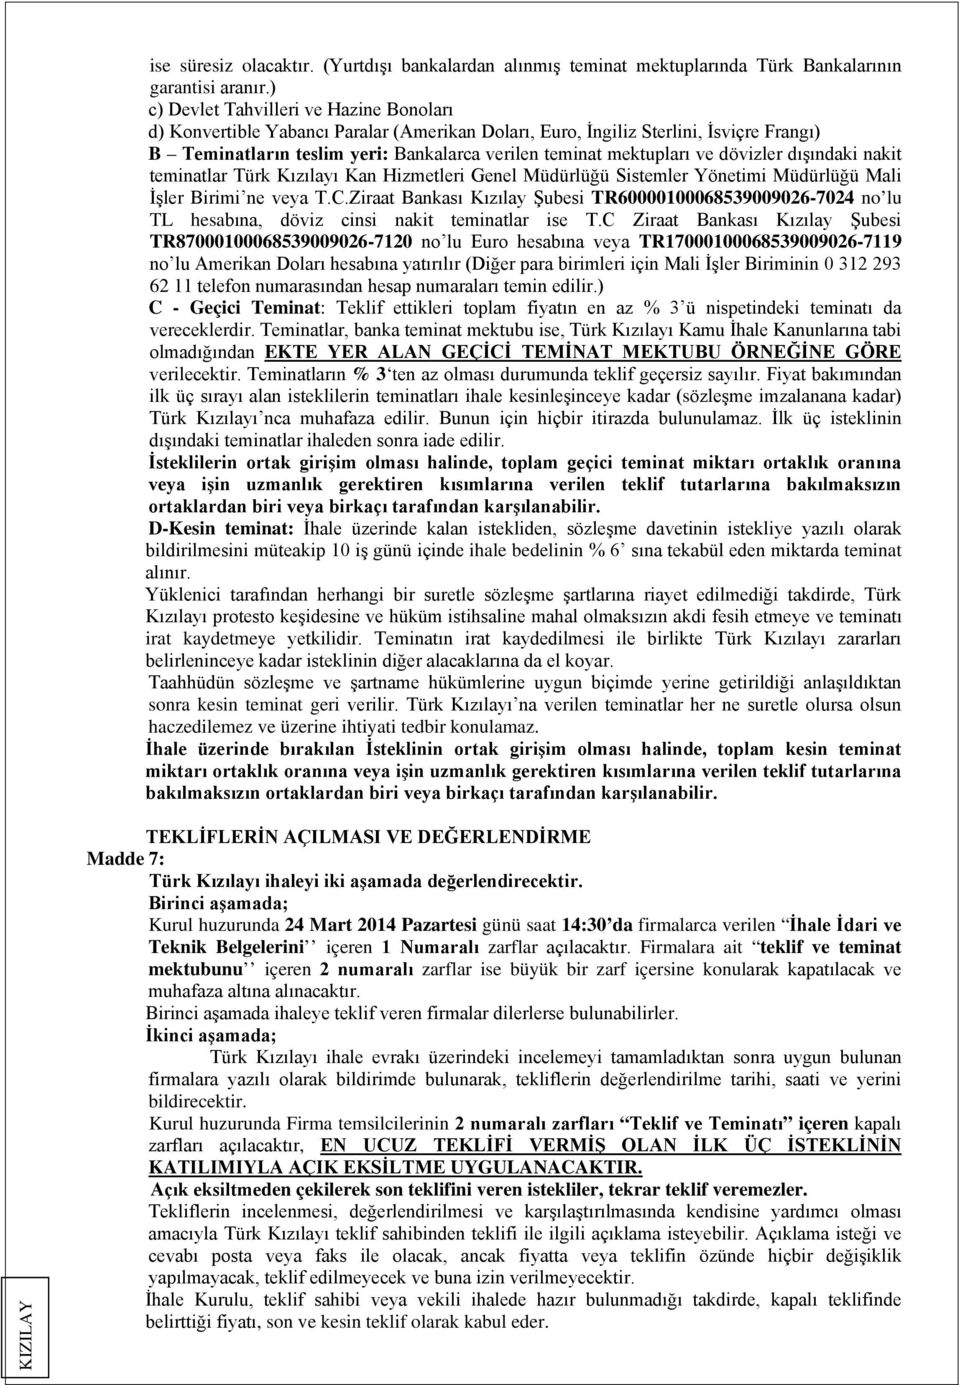 dövizler dışındaki nakit teminatlar Türk Kızılayı Kan Hizmetleri Genel Müdürlüğü Sistemler Yönetimi Müdürlüğü Mali İşler Birimi ne veya T.C.